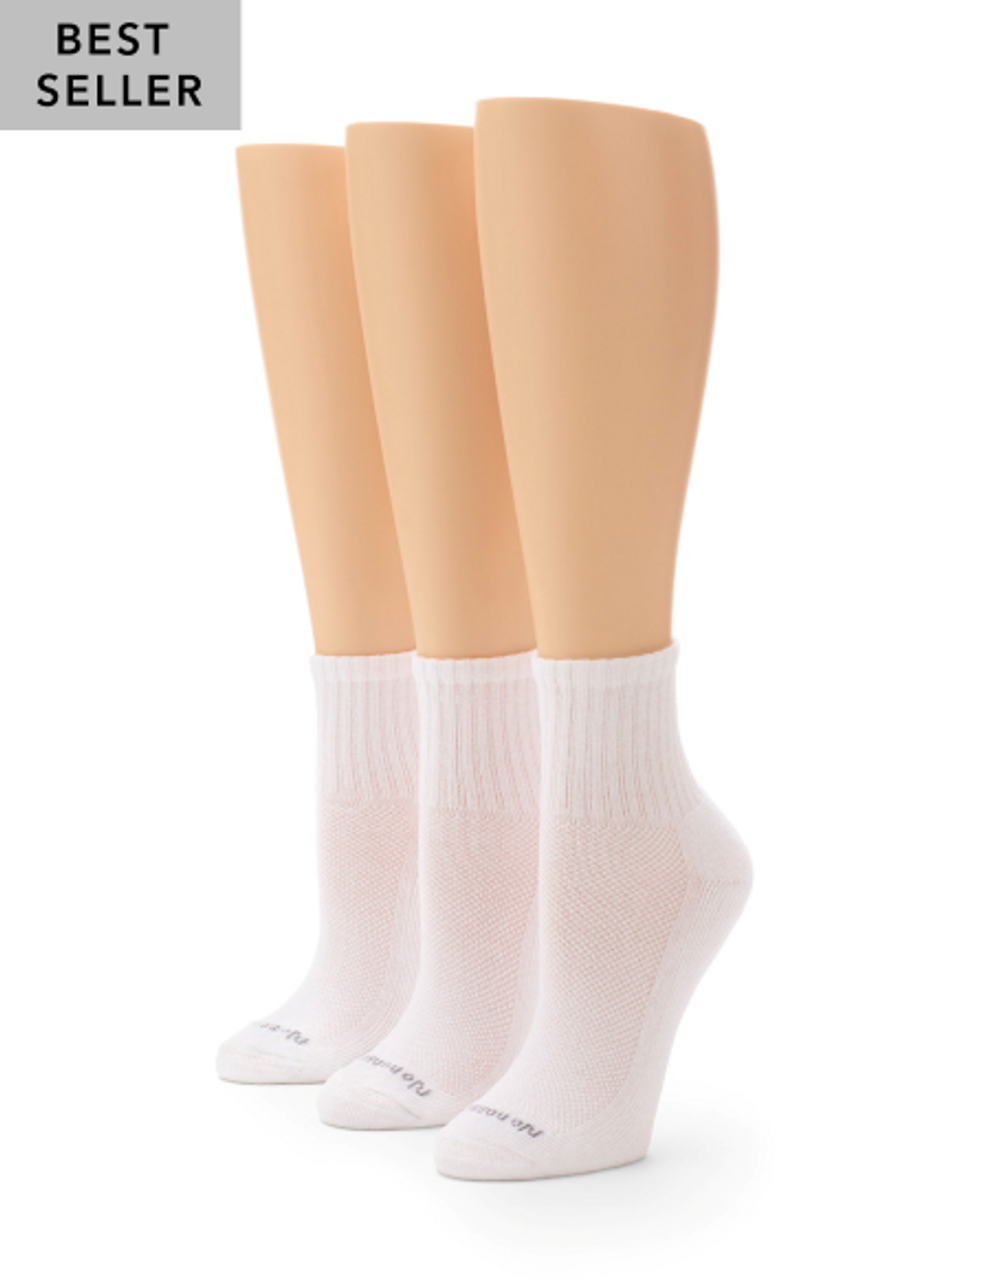 No Nonsense Women's Cushioned Mini Crew Socks - 3 pk - White, 4-10